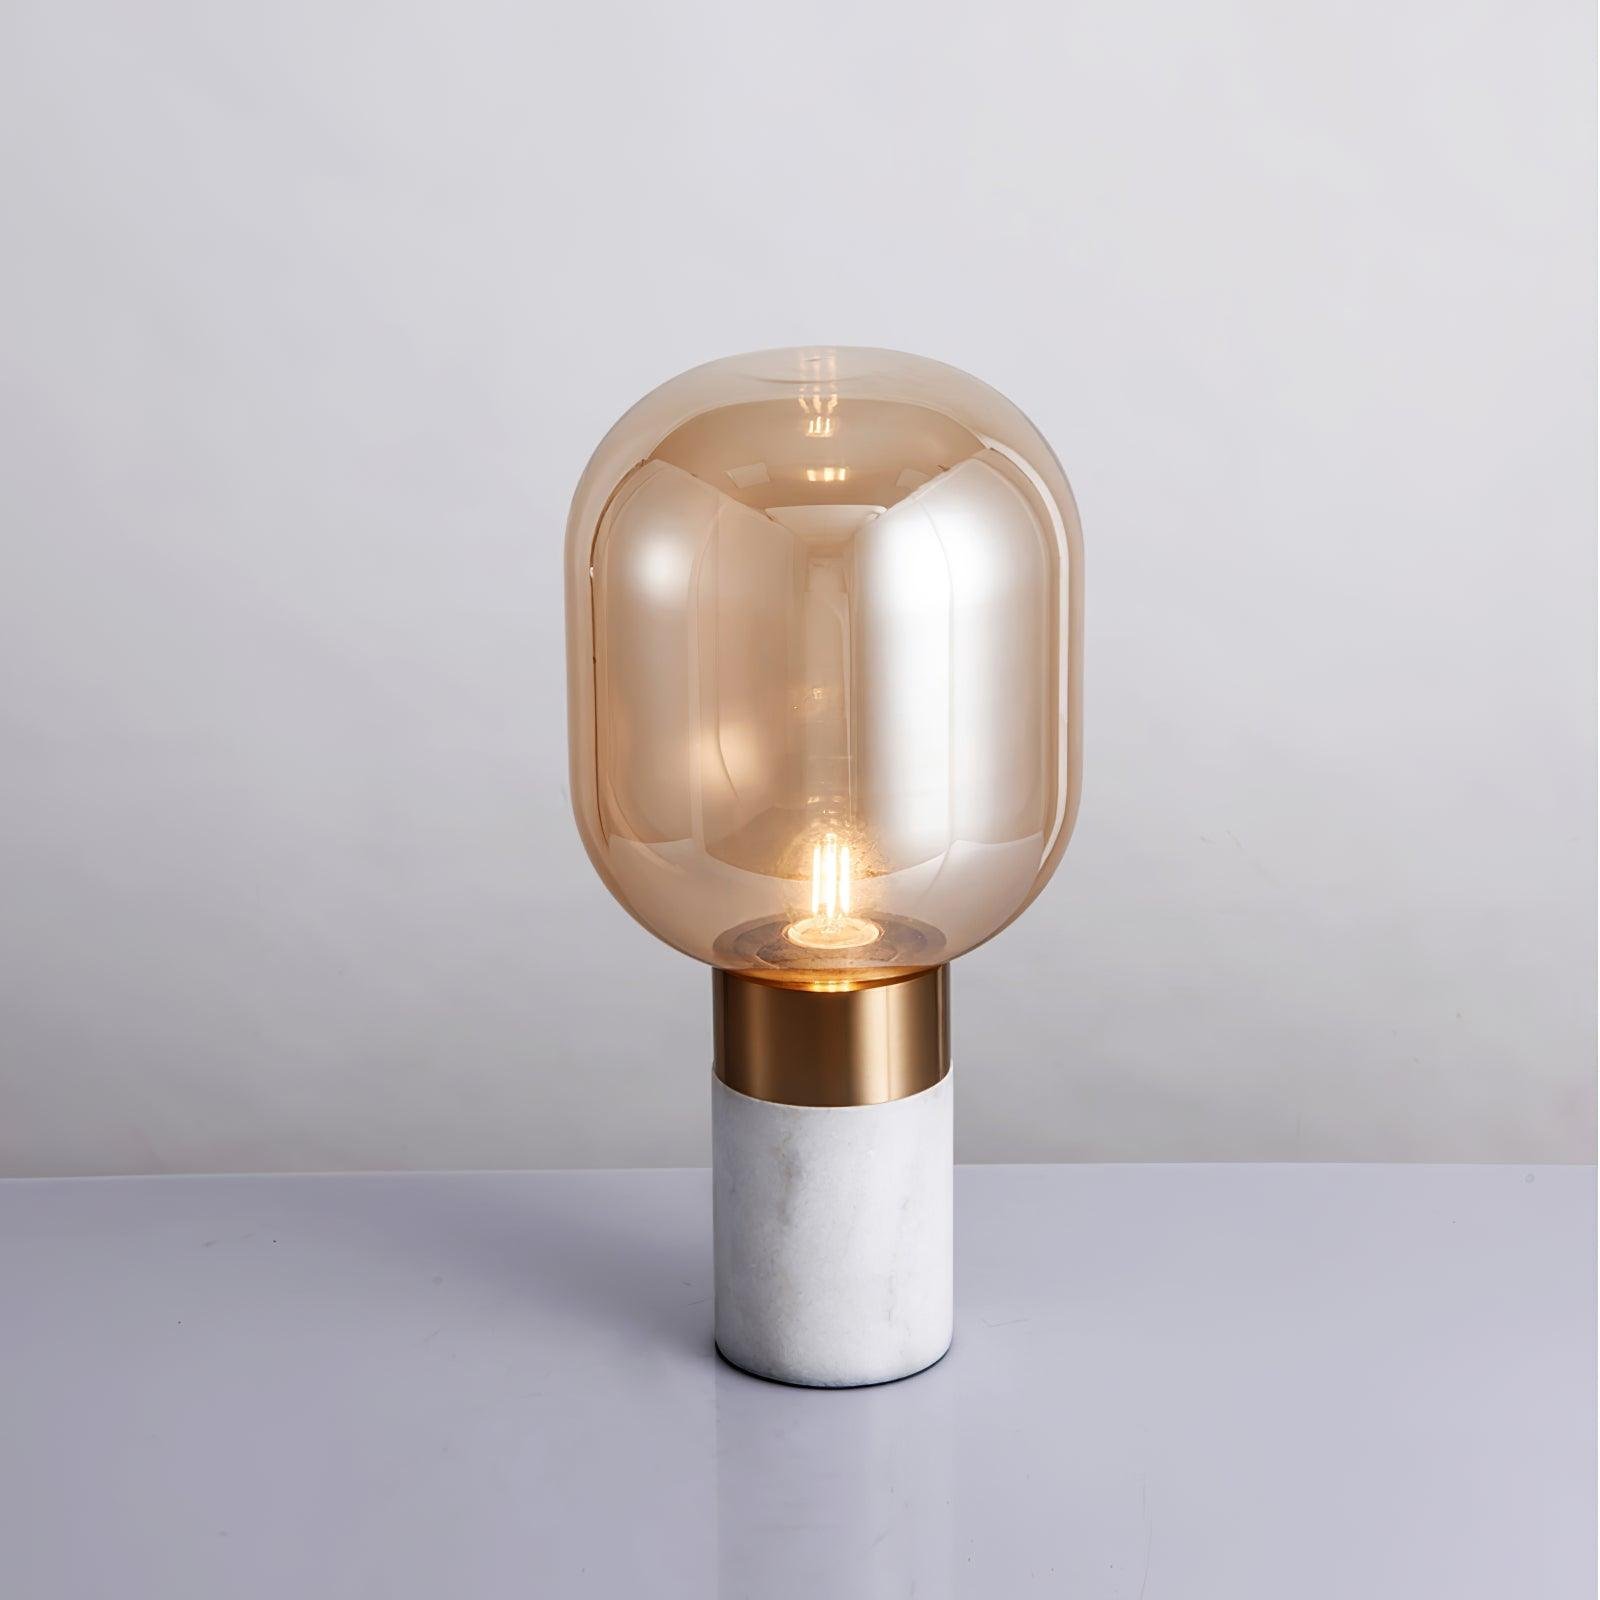 Storm Marble Table Lamp ∅ 9″ x H 18.8″, Dia 23cm x H 48cm , White Marble \ Cognac , EU plug